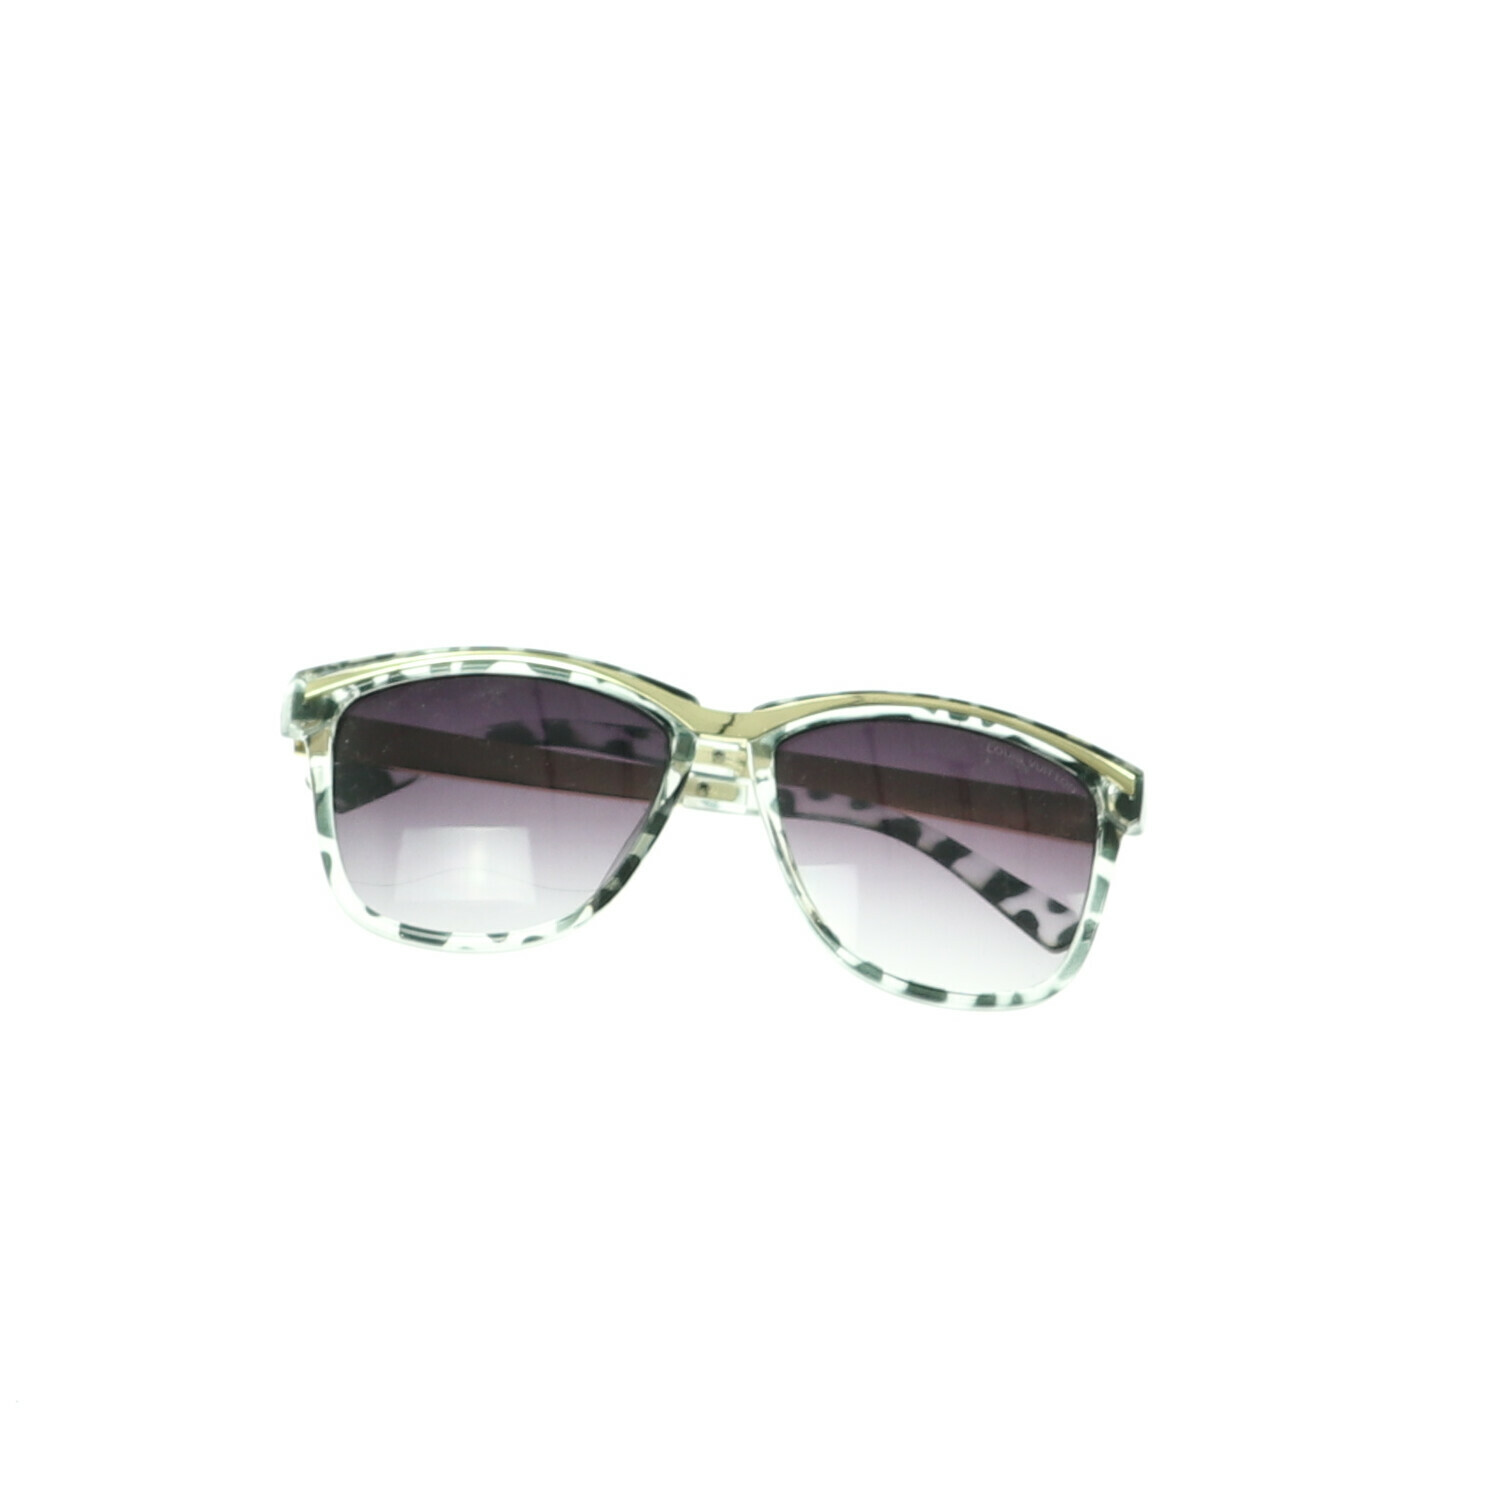 Louis Vuitton napszemüveg  Kiegészítők - Napszemüvegek